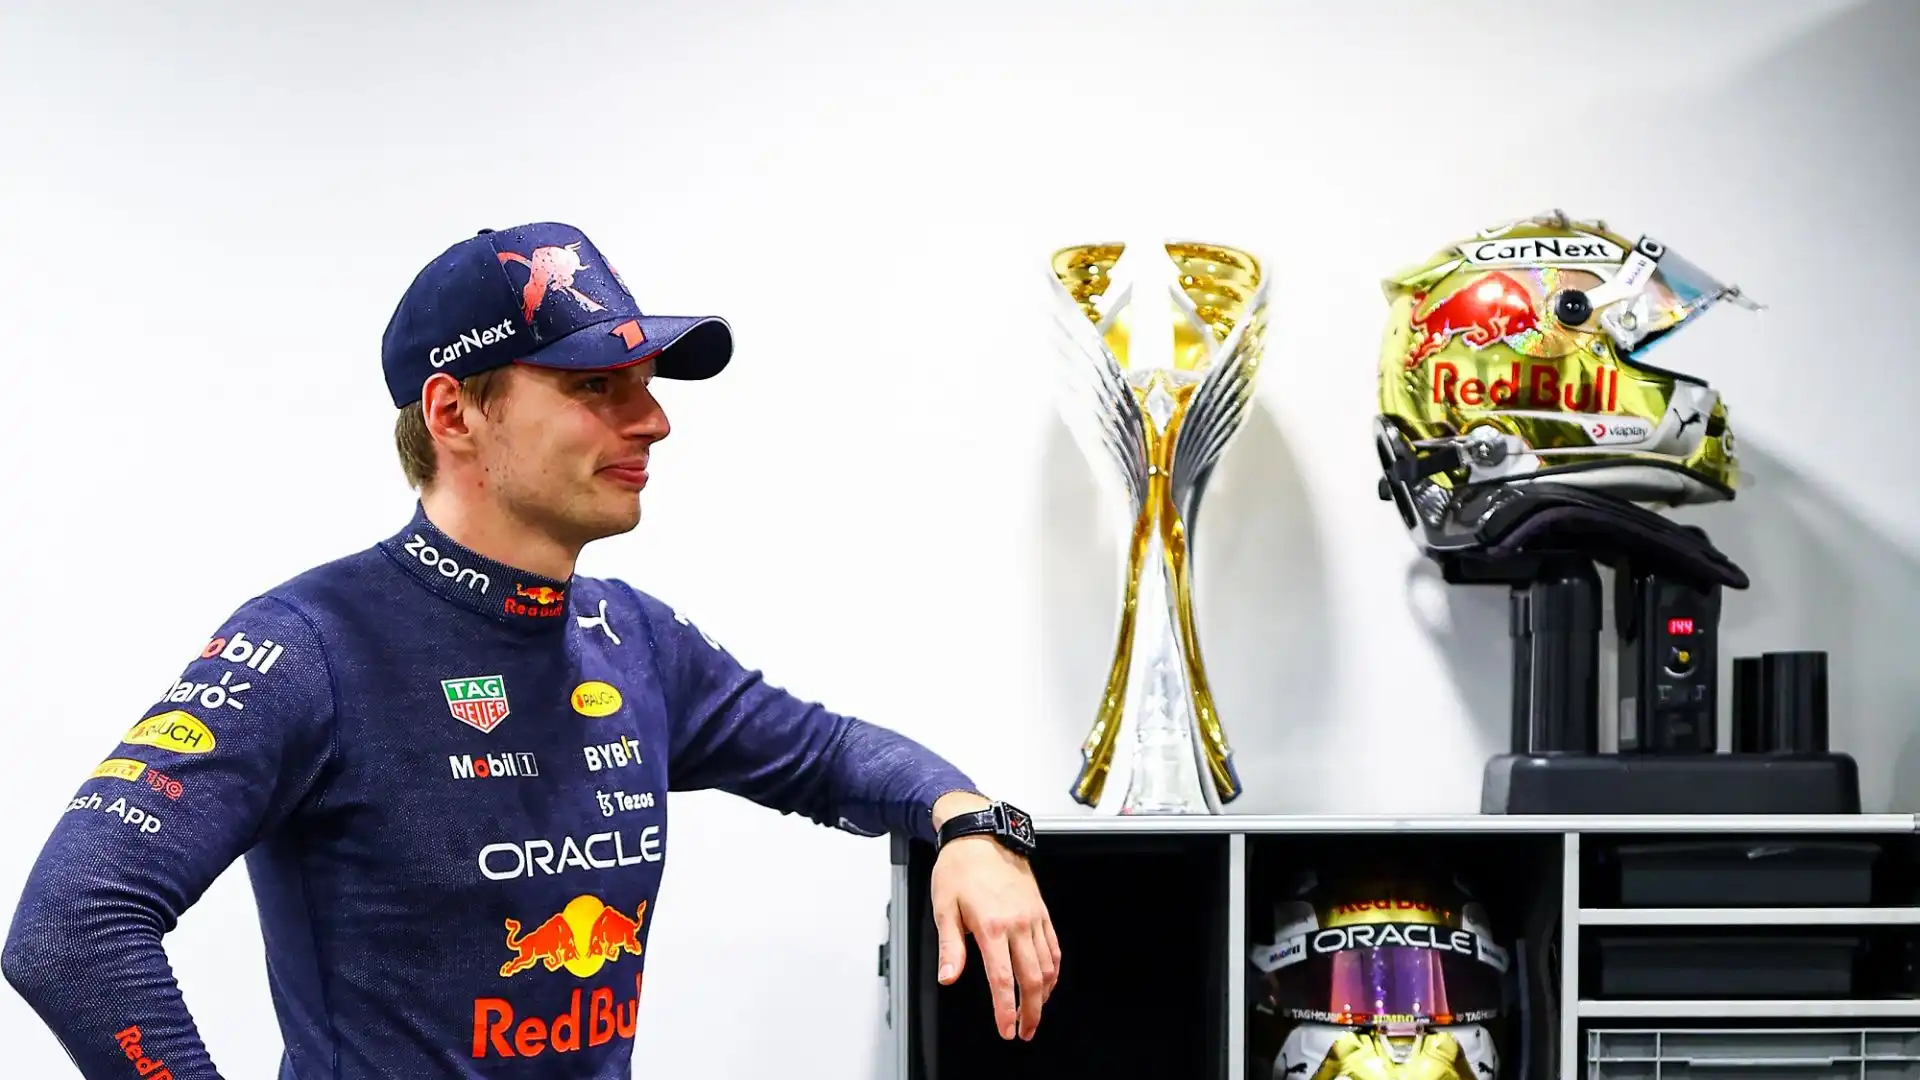 Il matrimonio tra Verstappen e Red Bull è iniziato nel 2014